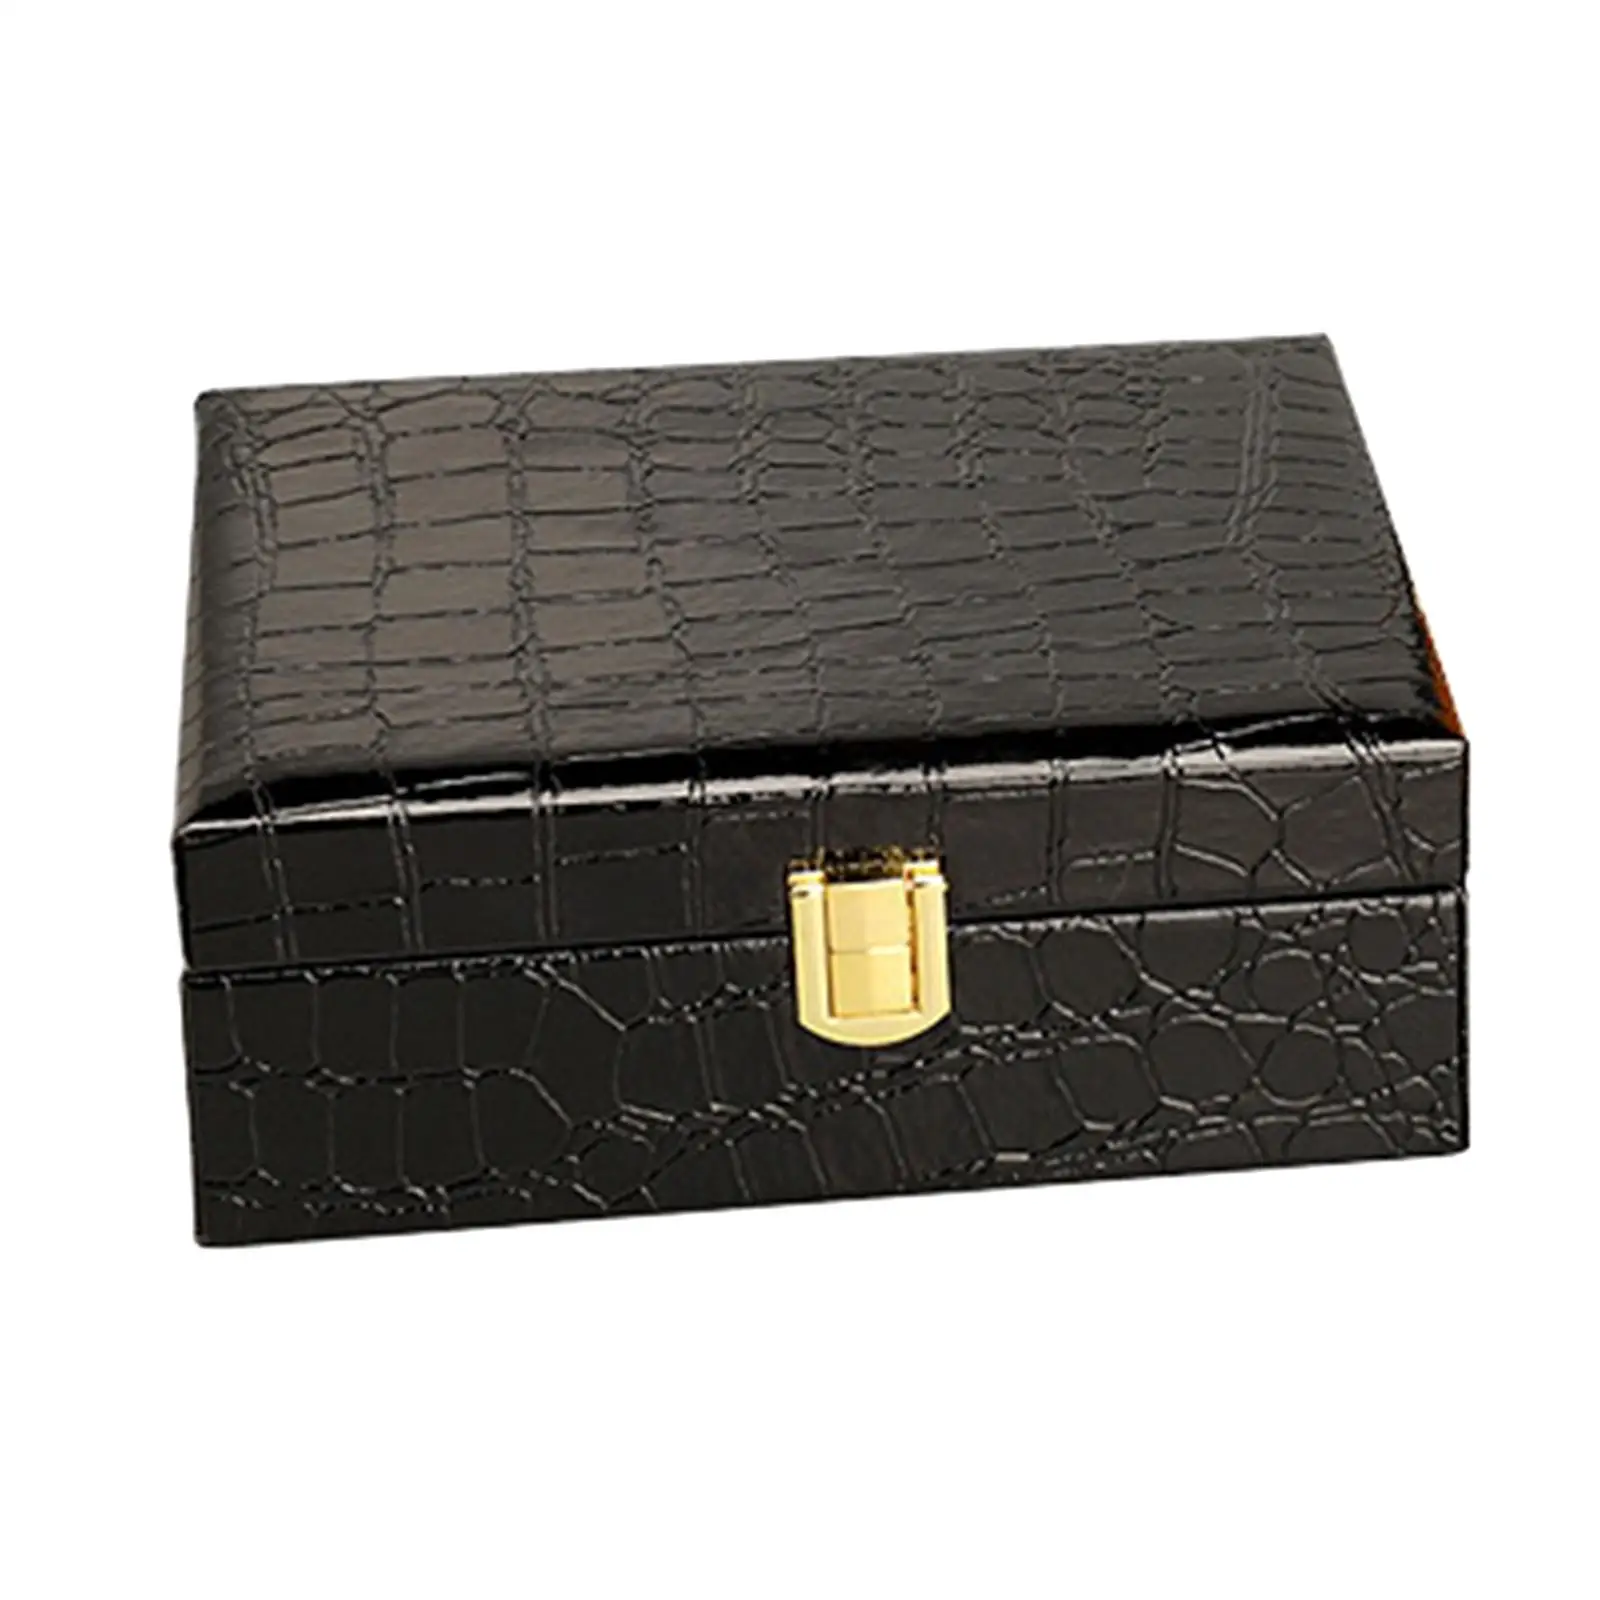 Cigar Case Jewelry Organizer Box Rectangular Vintage Storage Case Exquisite Handcraft Trinket Box for Travel Necklaces Women Men